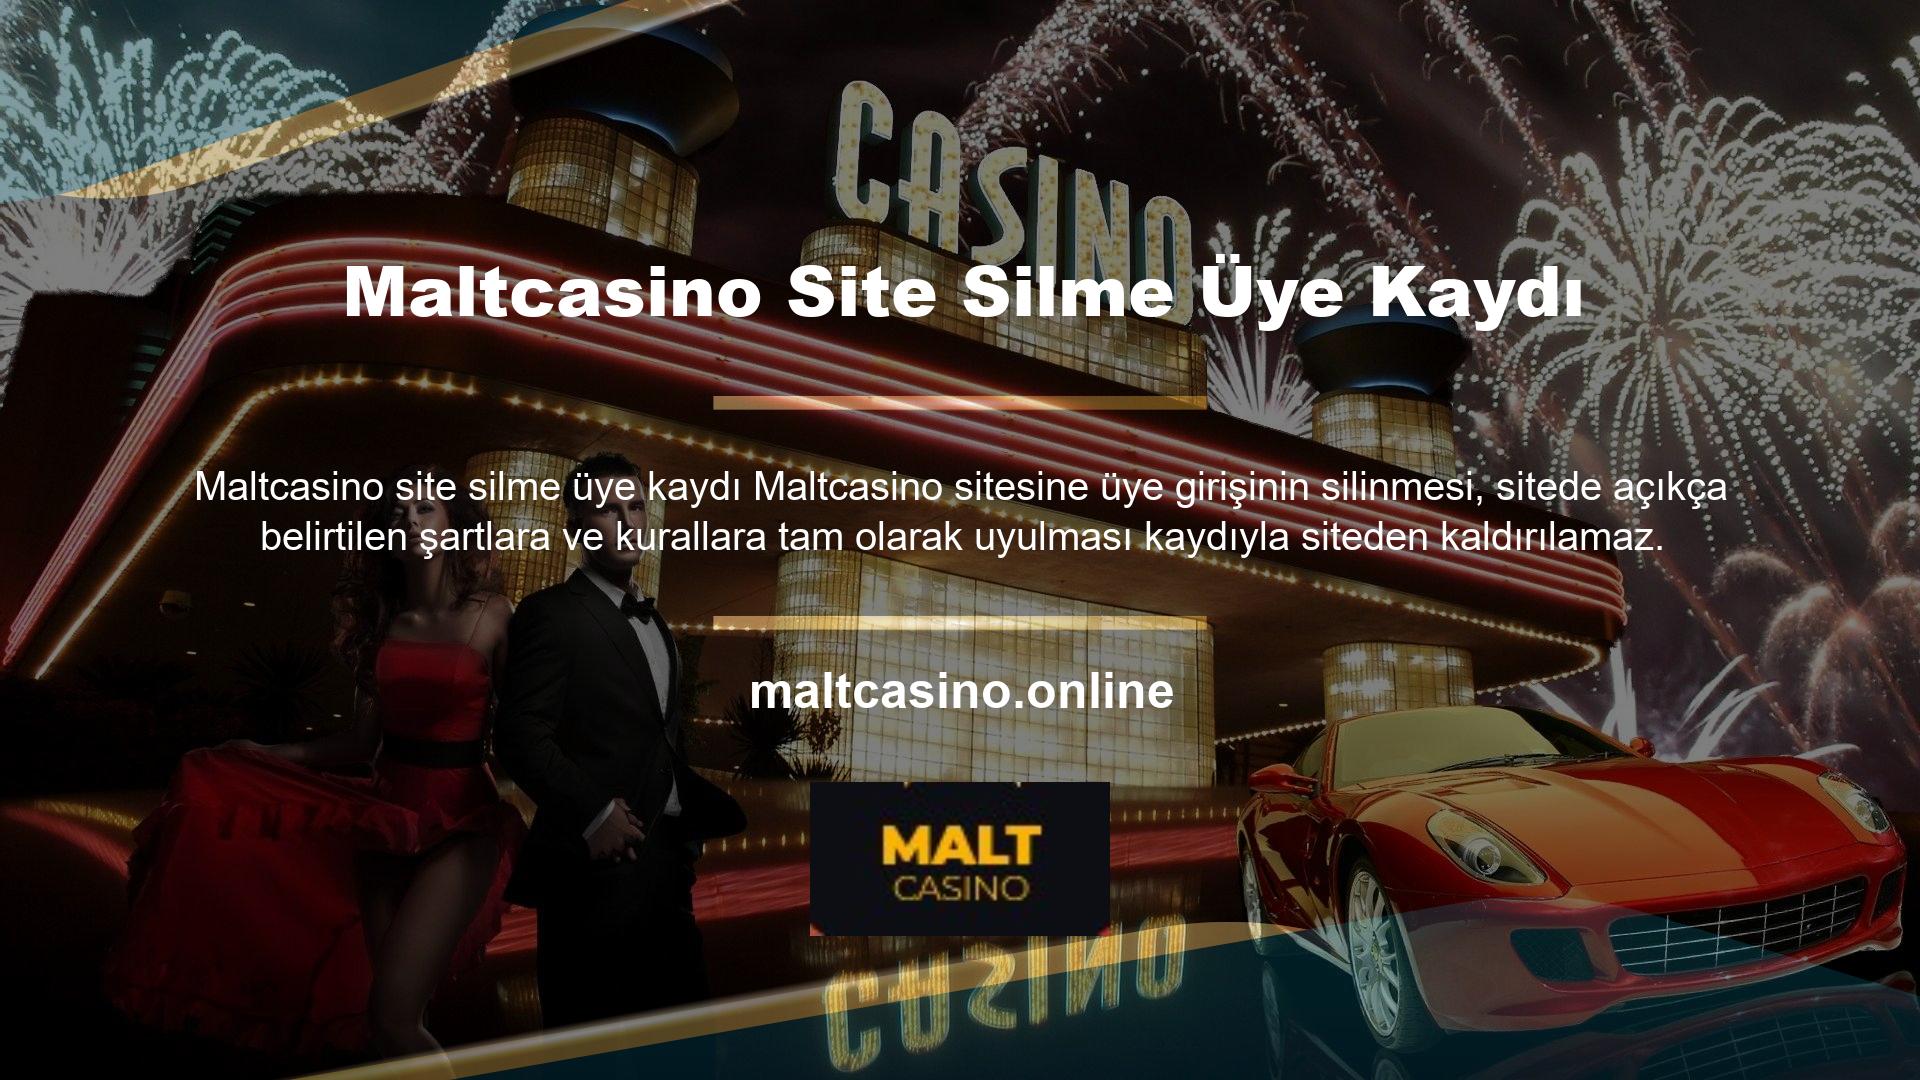 Maltcasino üyelik kaydının silinmemesi için en önemli şey Maltcasino sitesi üyelik kaydı silme kurallarına sıkı sıkıya bağlı kalmaktır